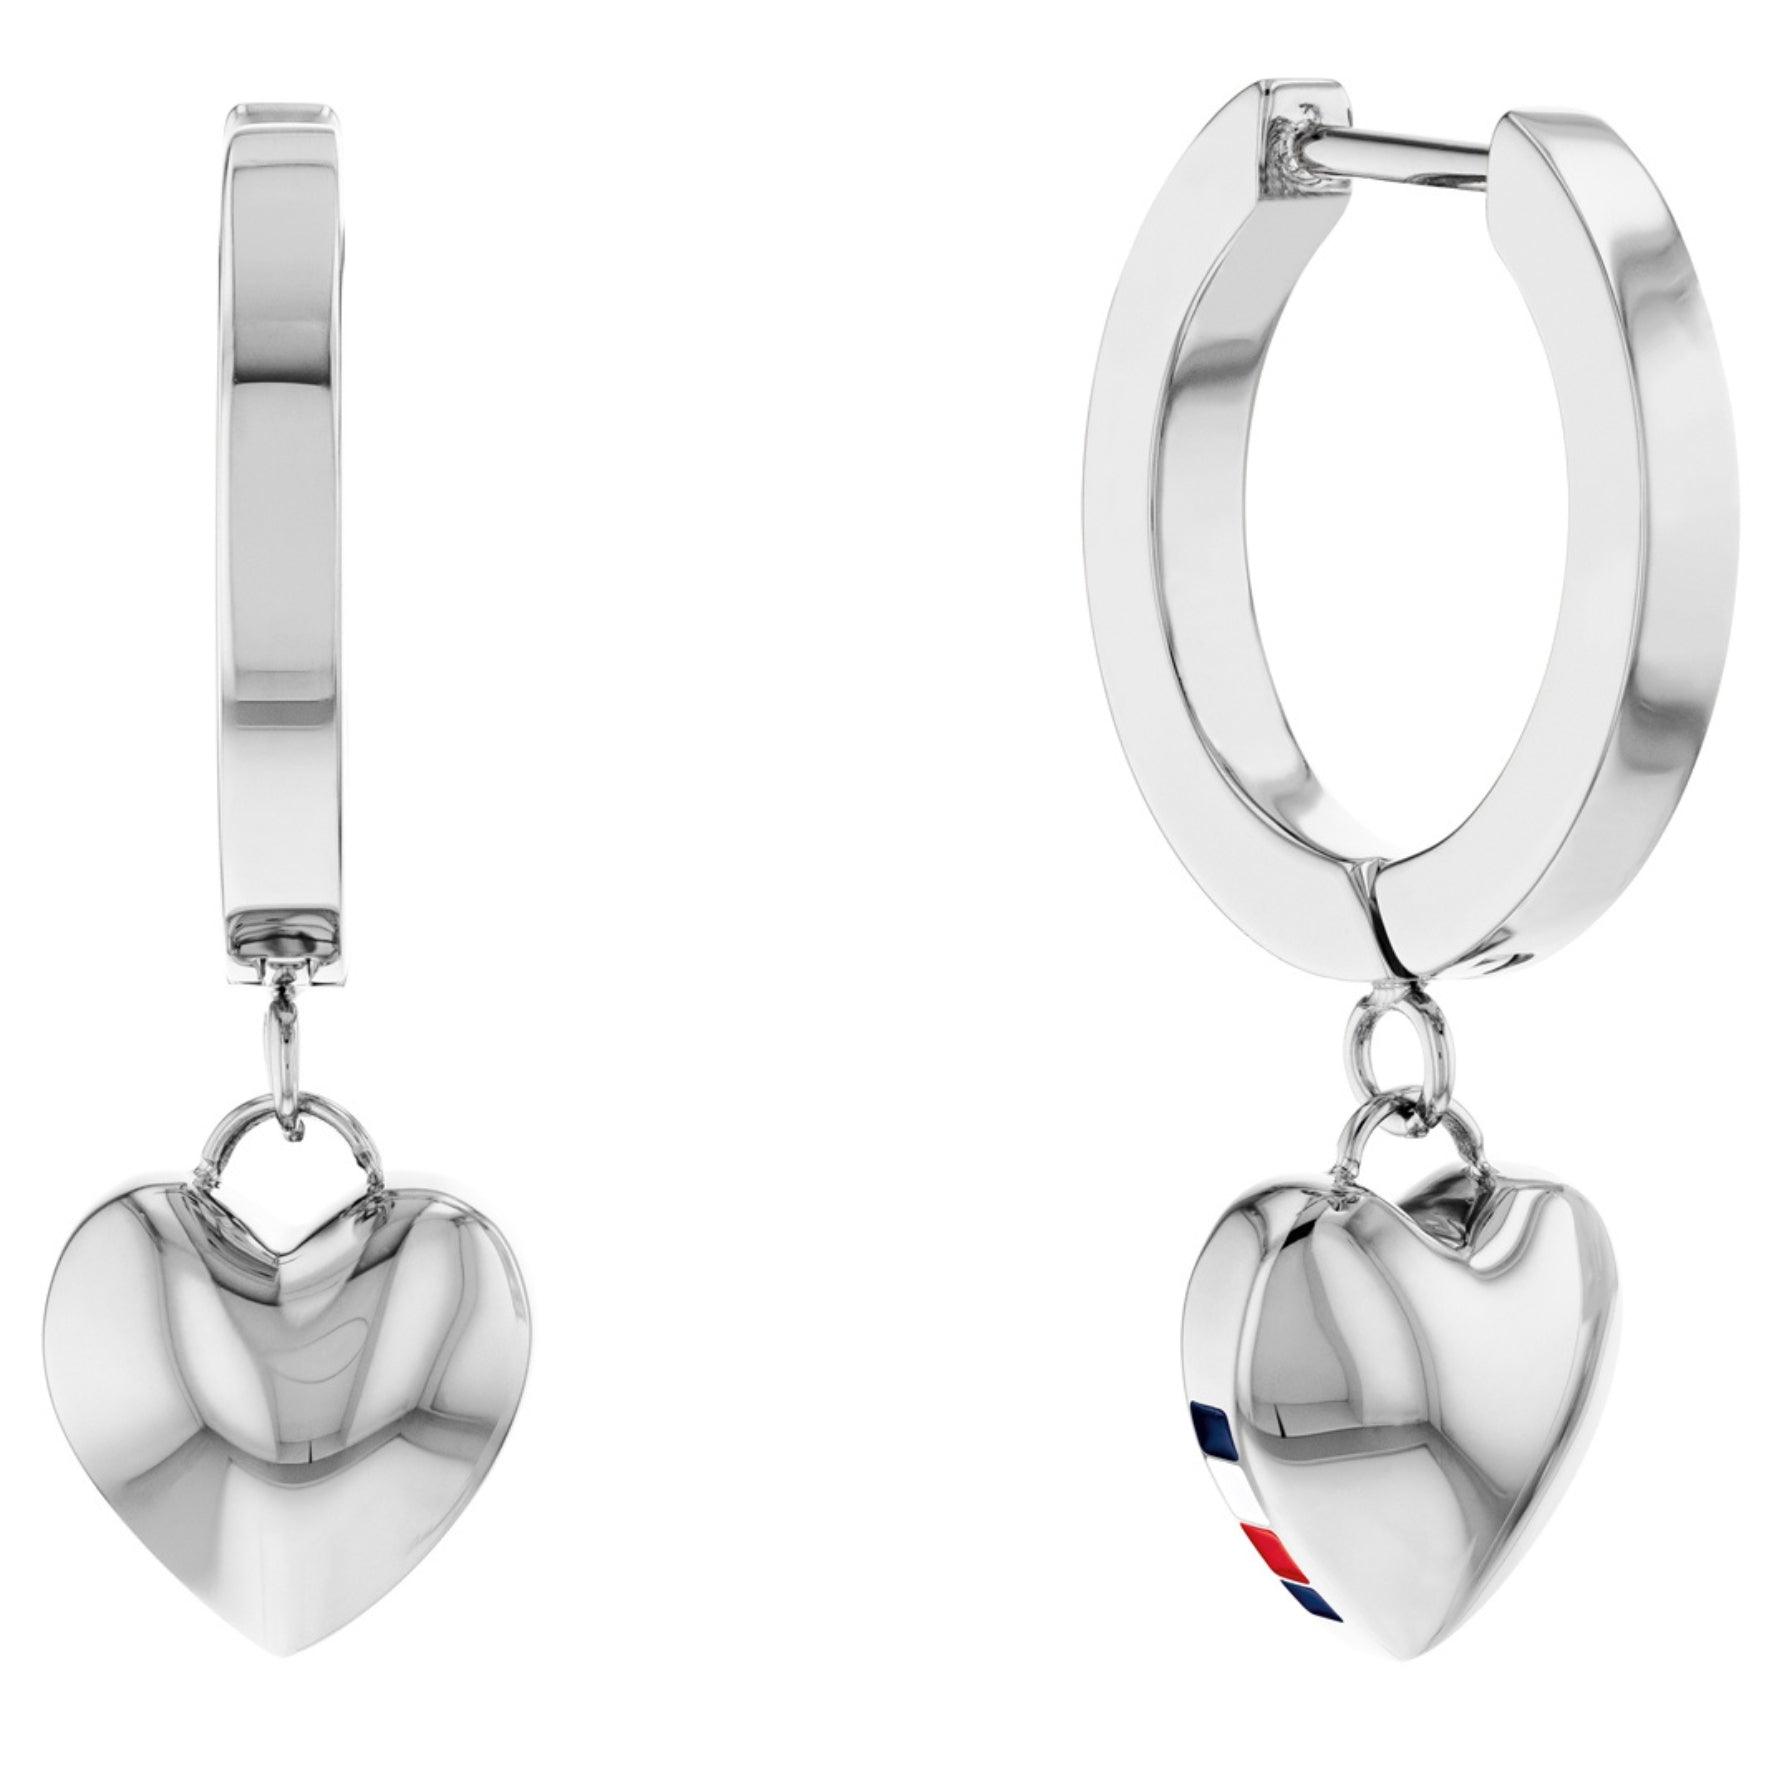 Γυναικεία σκουλαρίκια κρίκοι Tommy Hilfiger με κρεμαστή καρδιά σε ασημί χρώμα.